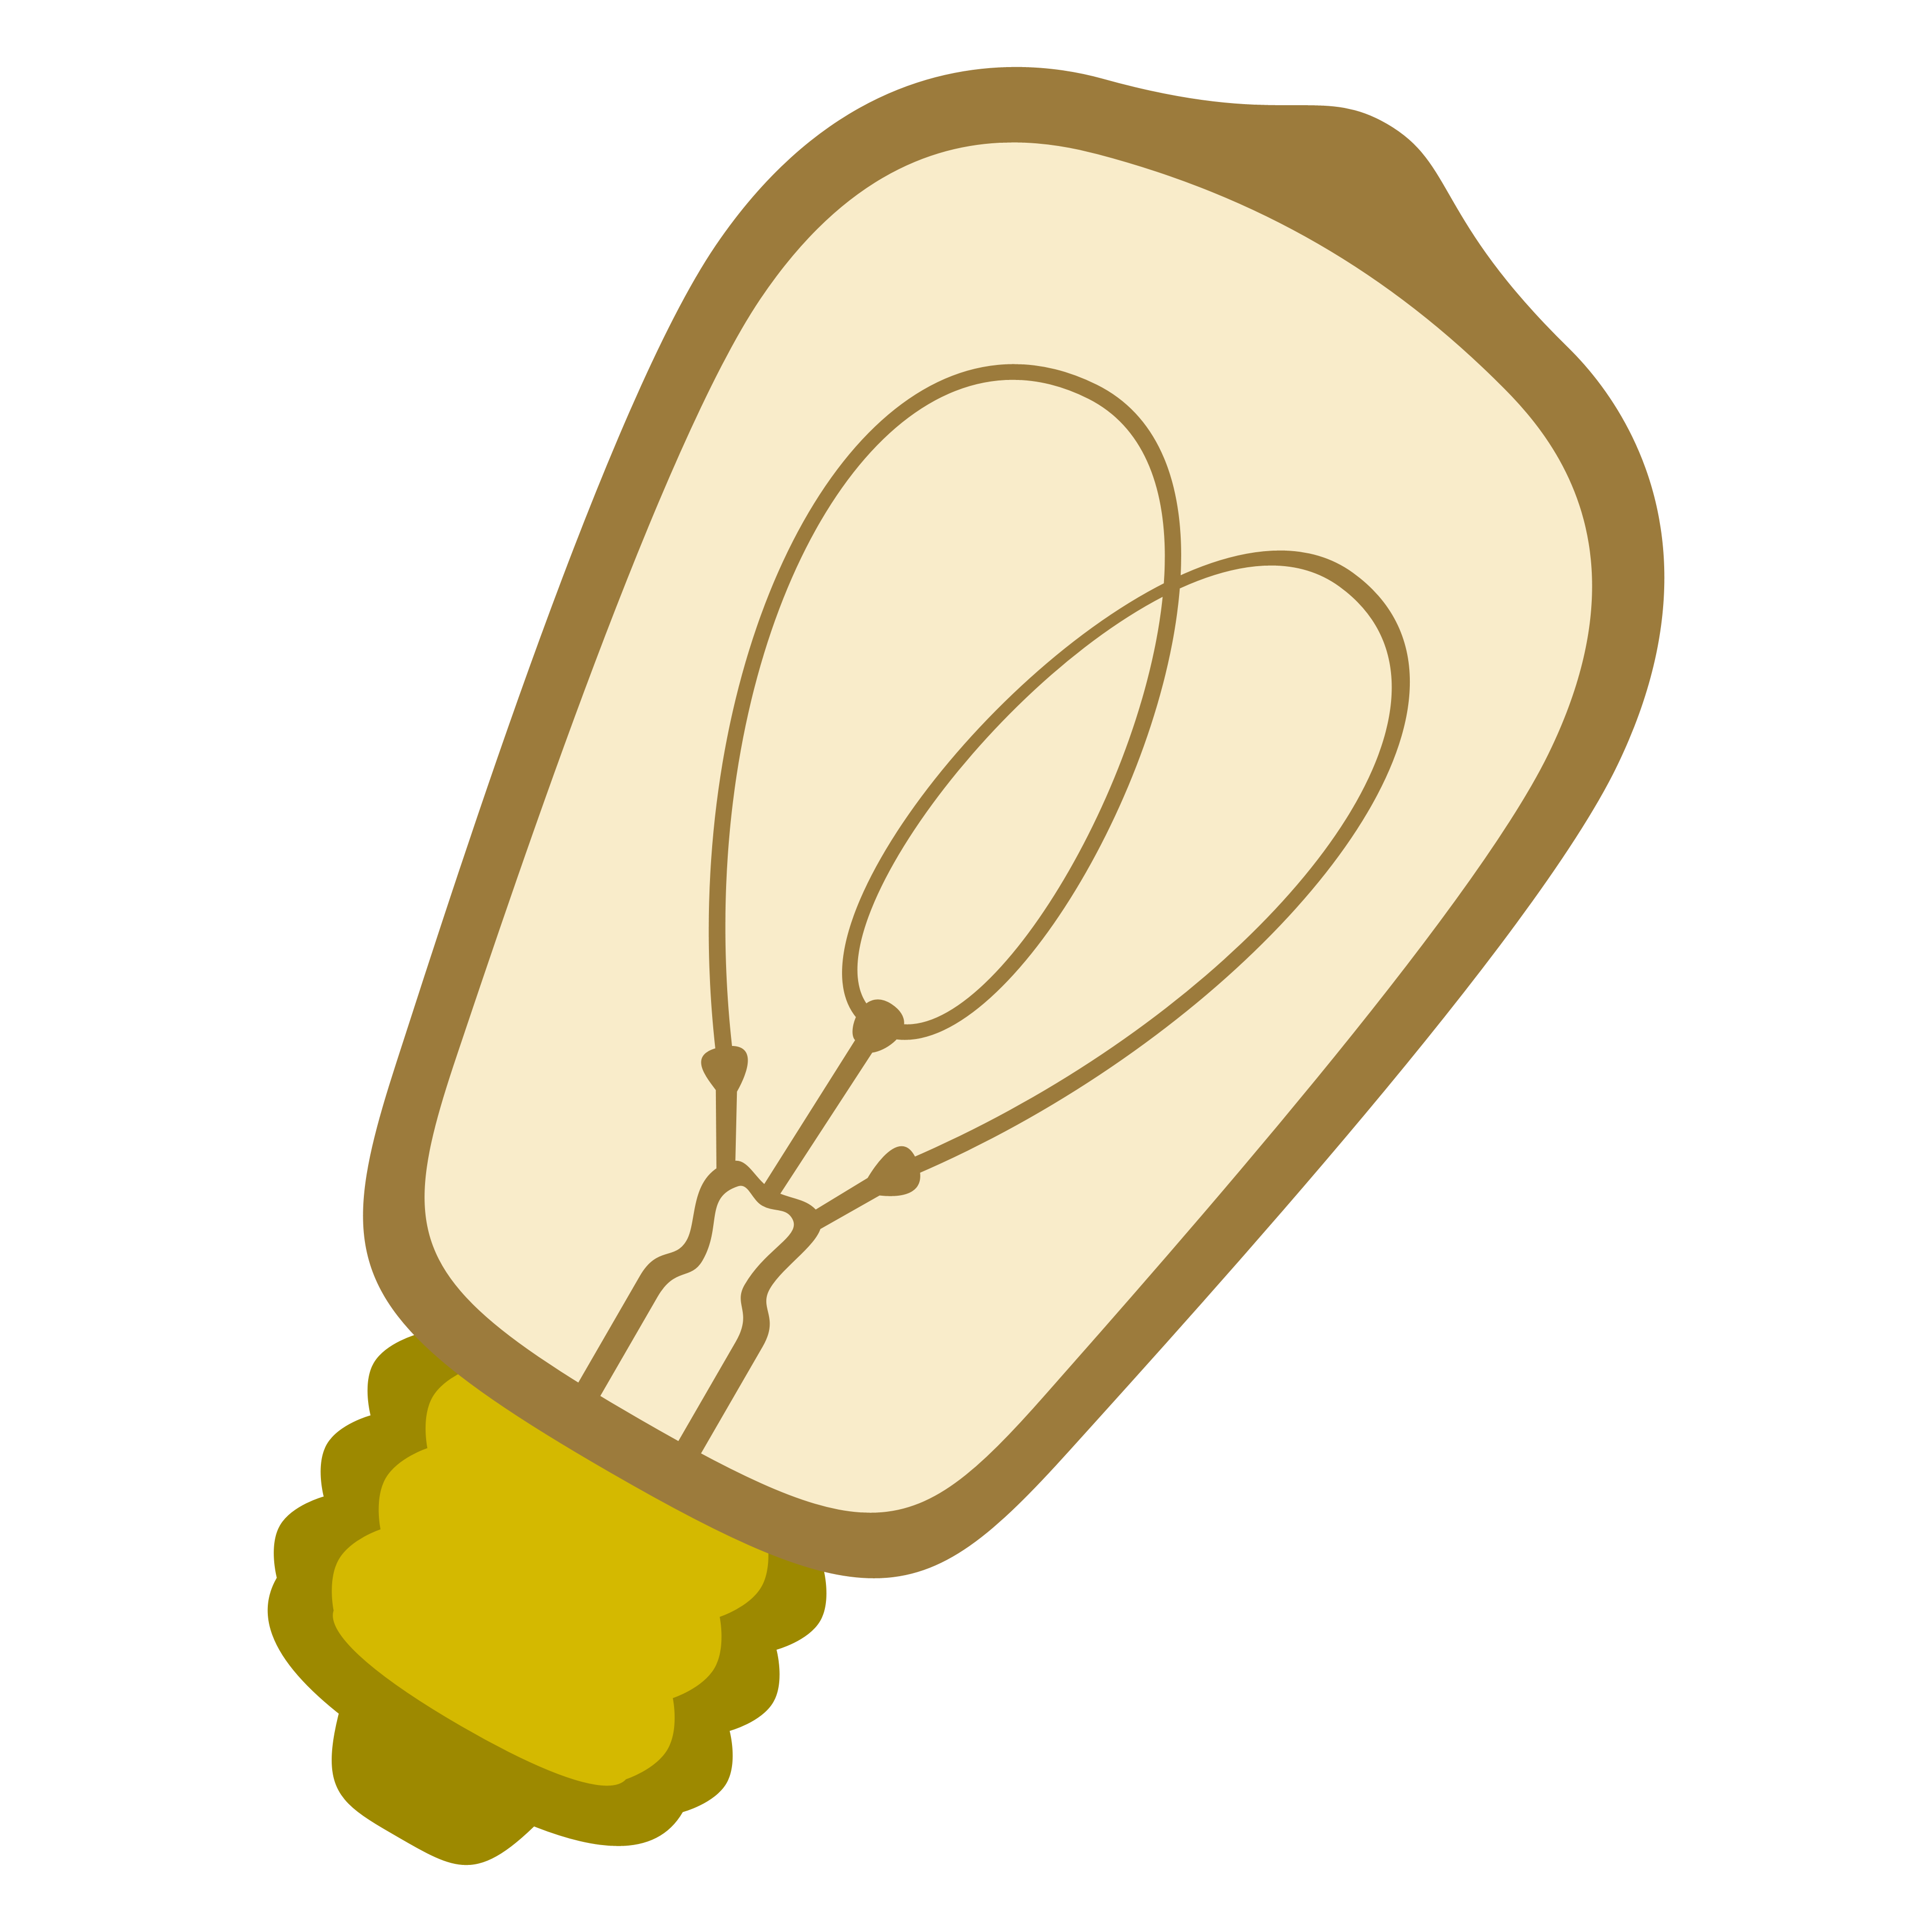 lightbulb clipart lightbulb edison